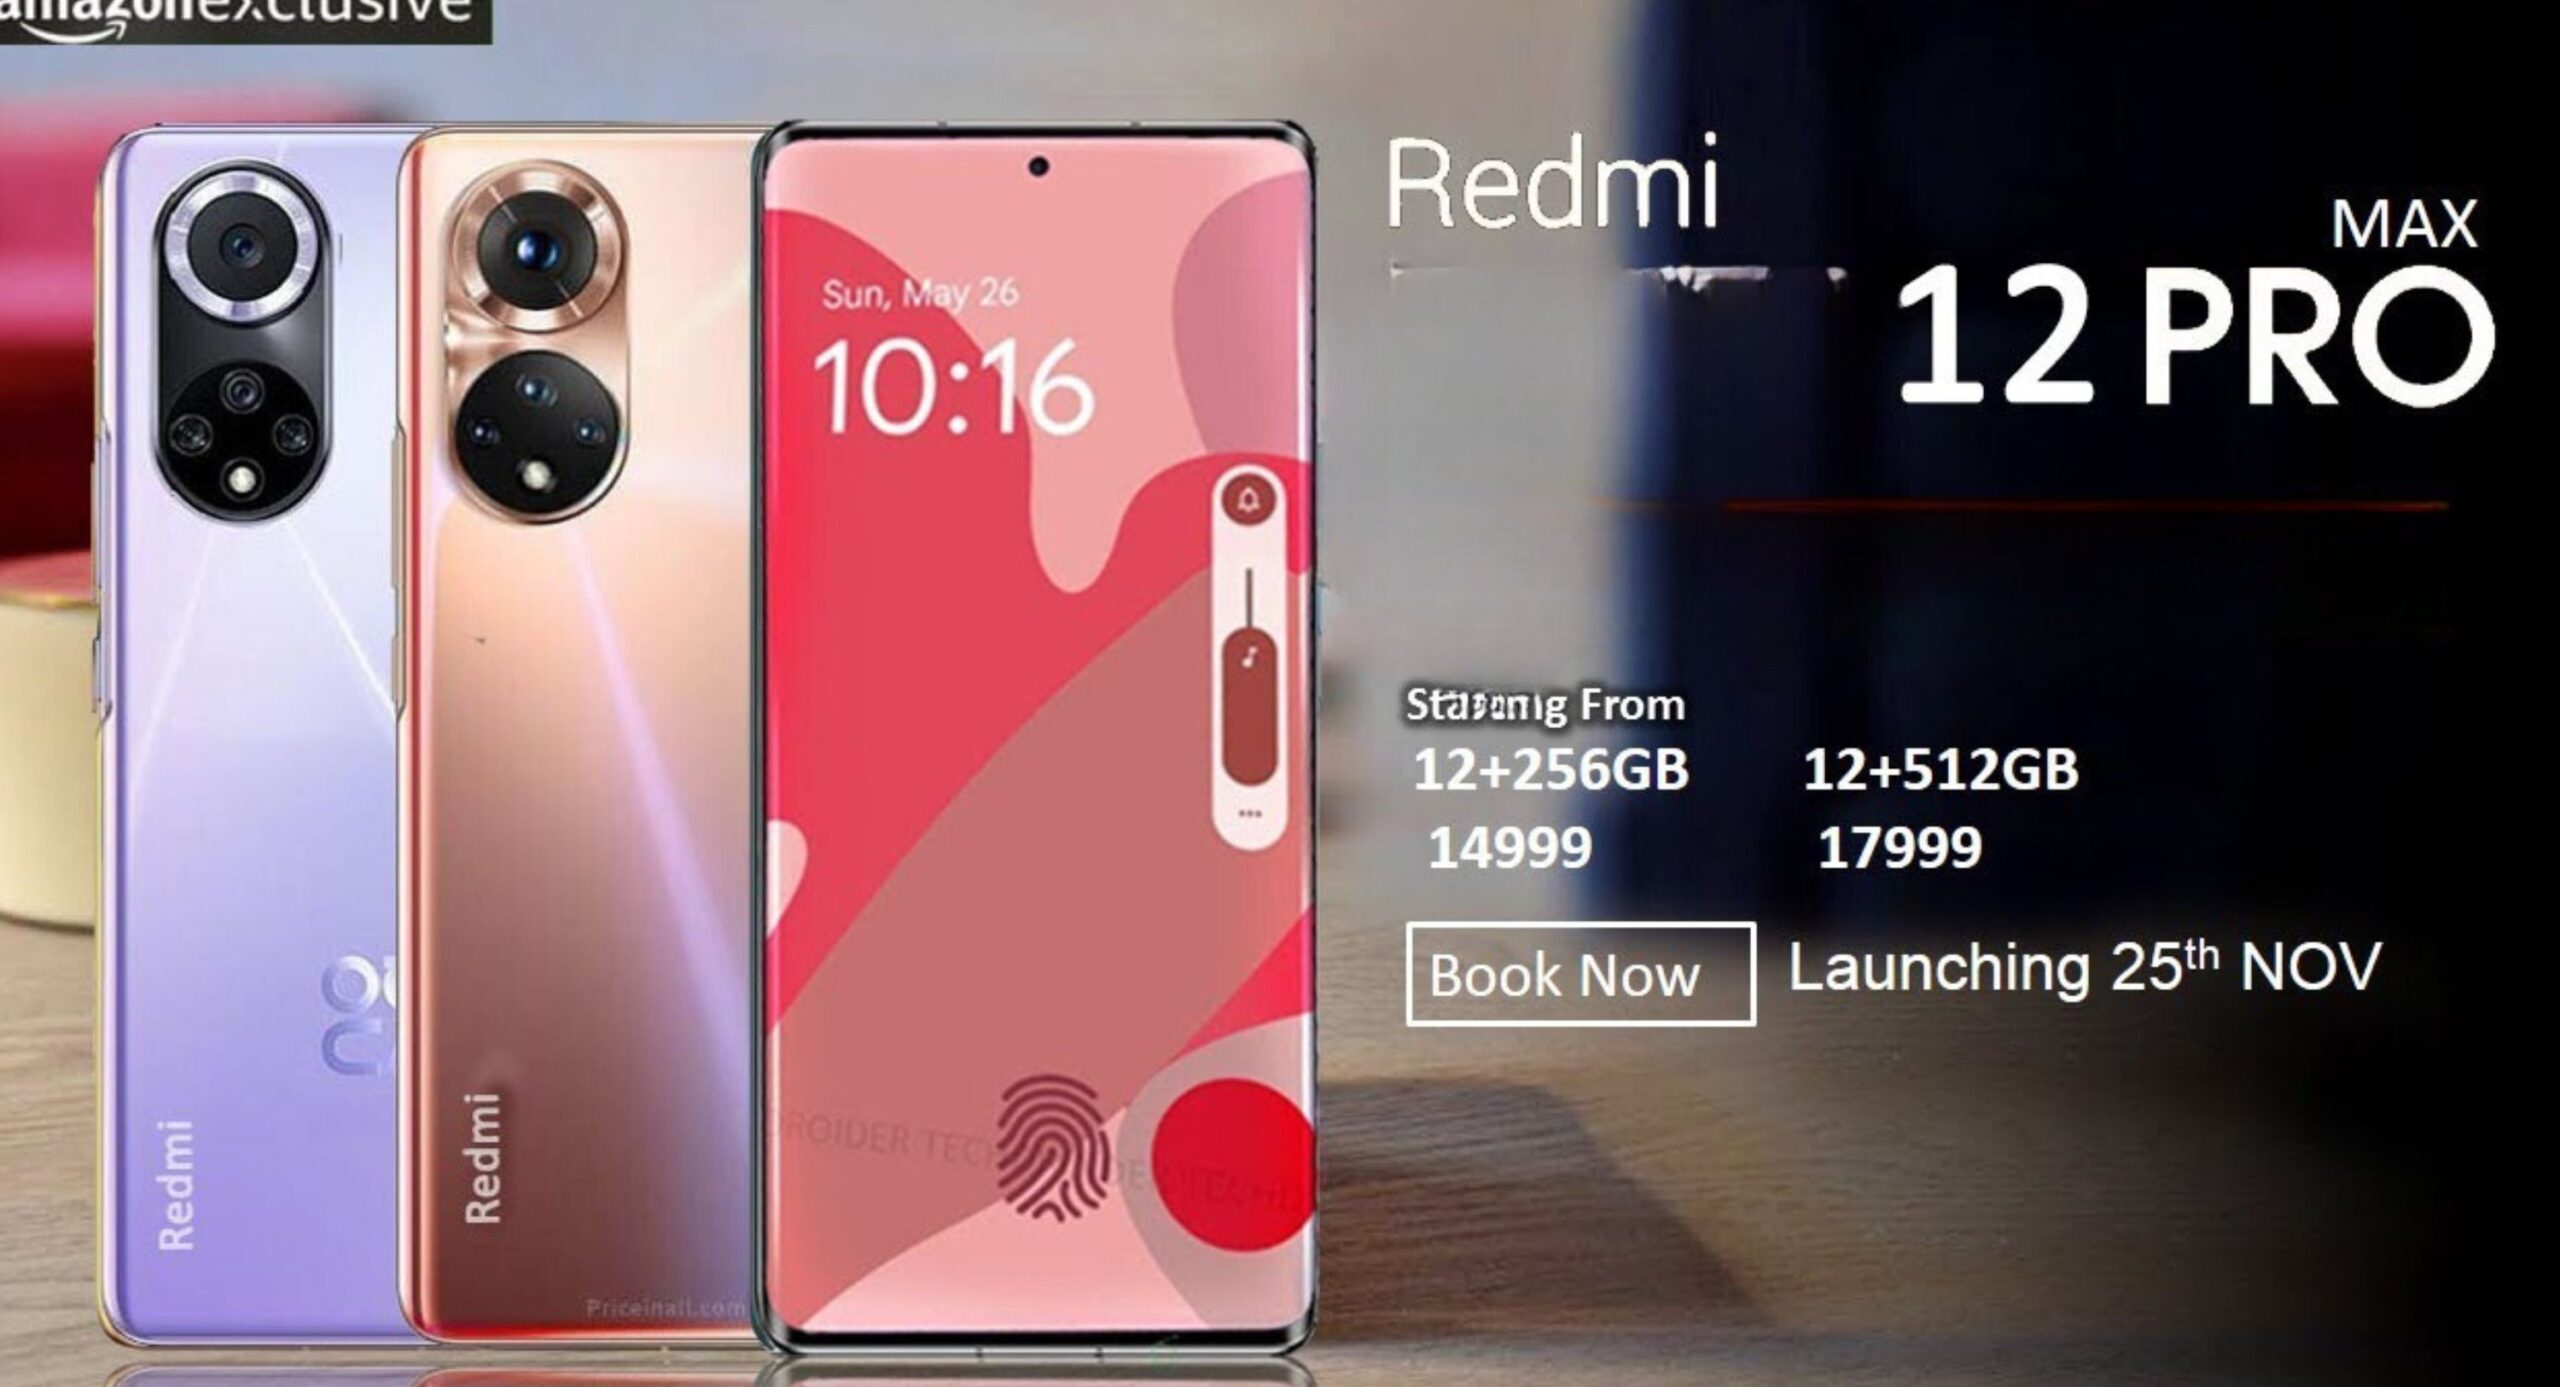 Redmi का यह धांसू डिज़ाइन वाला स्मार्टफोन अब आपके बजट में, 8mAh के बैटरी के साथ में दमदार फीचर्स